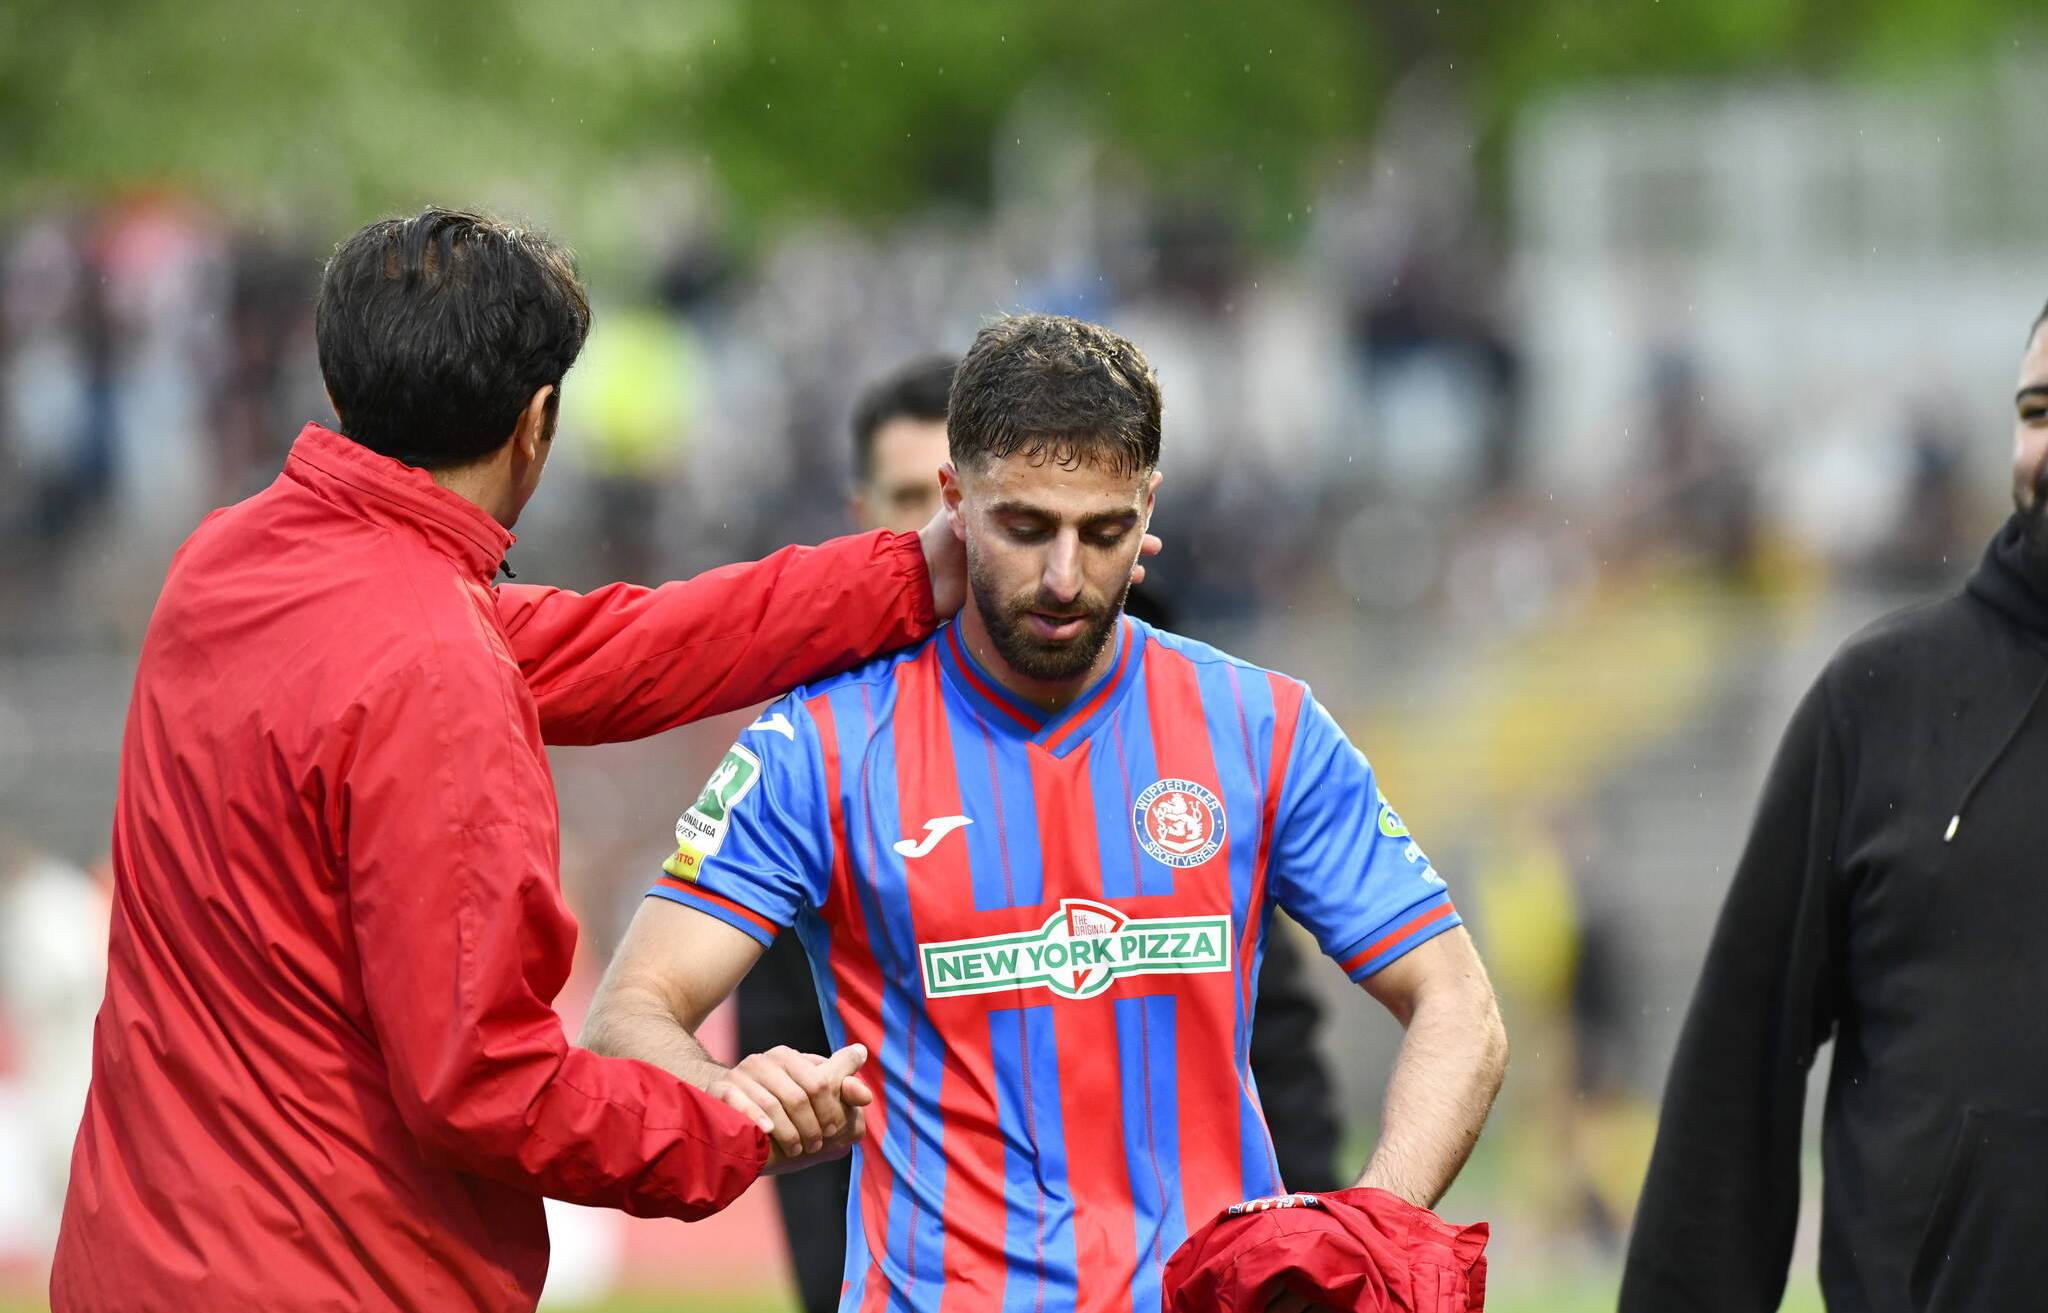 Serhat-Semih Güler versucht es nun gleich zwei Ligen höher.